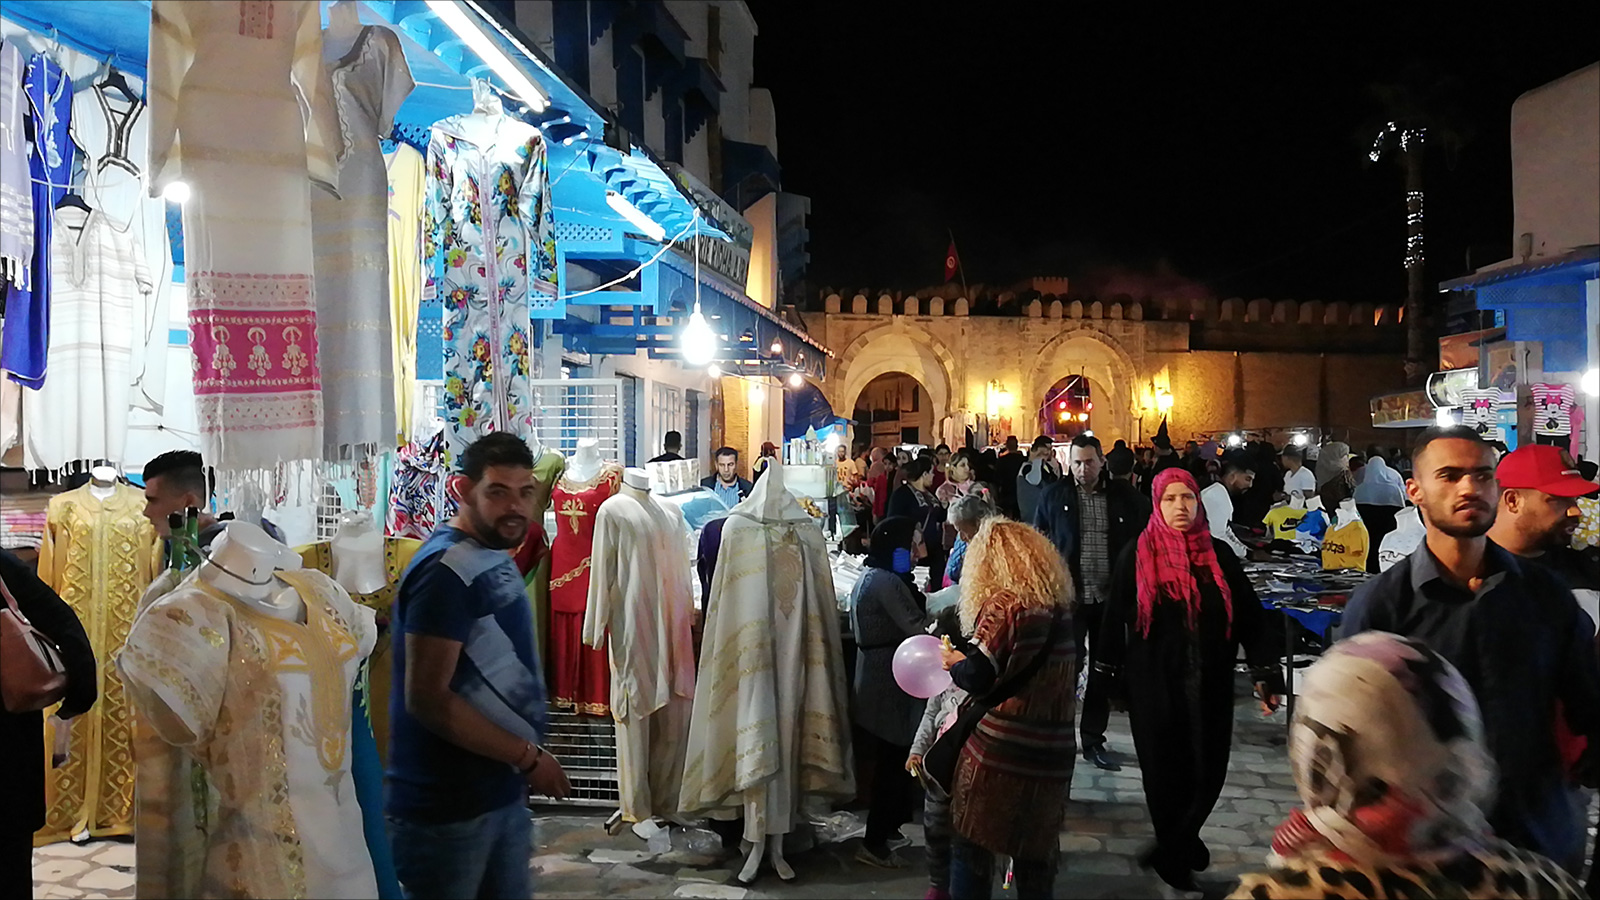 سوق العتقة تنتعش بفضل زوار المدينة (الجزيرة)